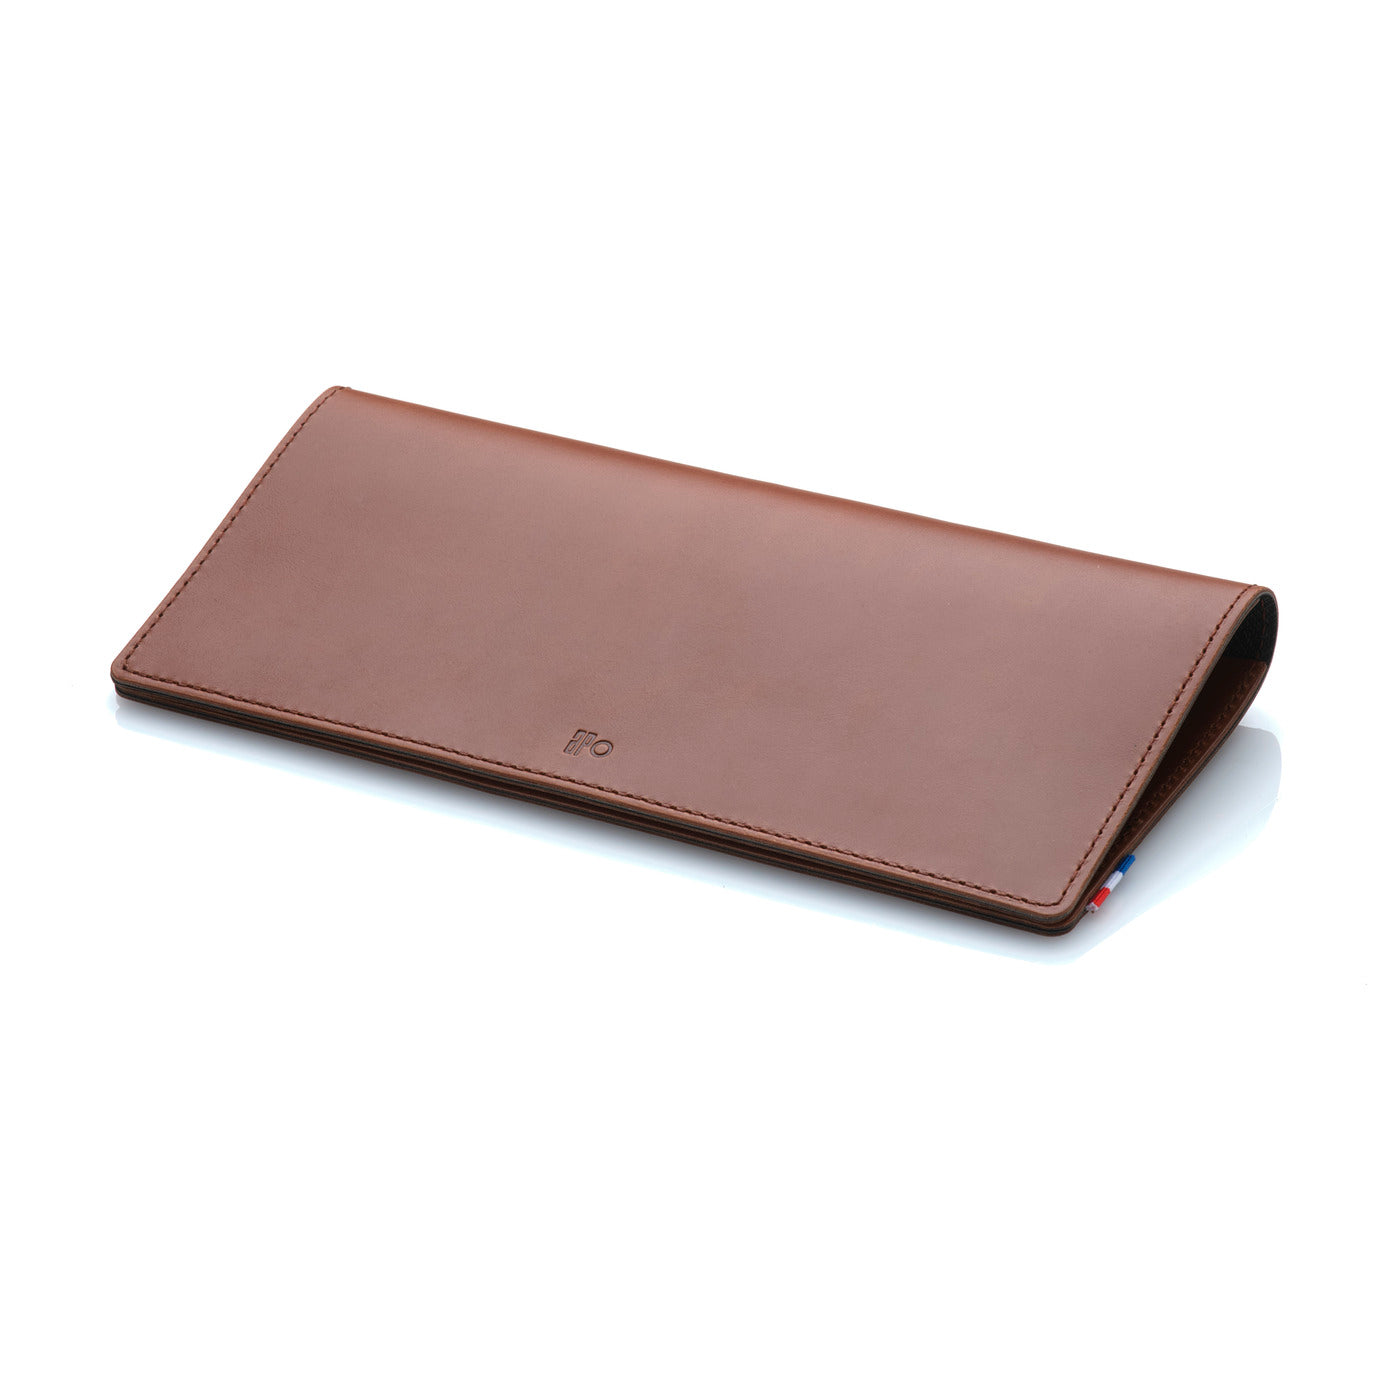 VIC - Portefeuille de voyage et porte-chéquier en cuir patiné - Chocolat